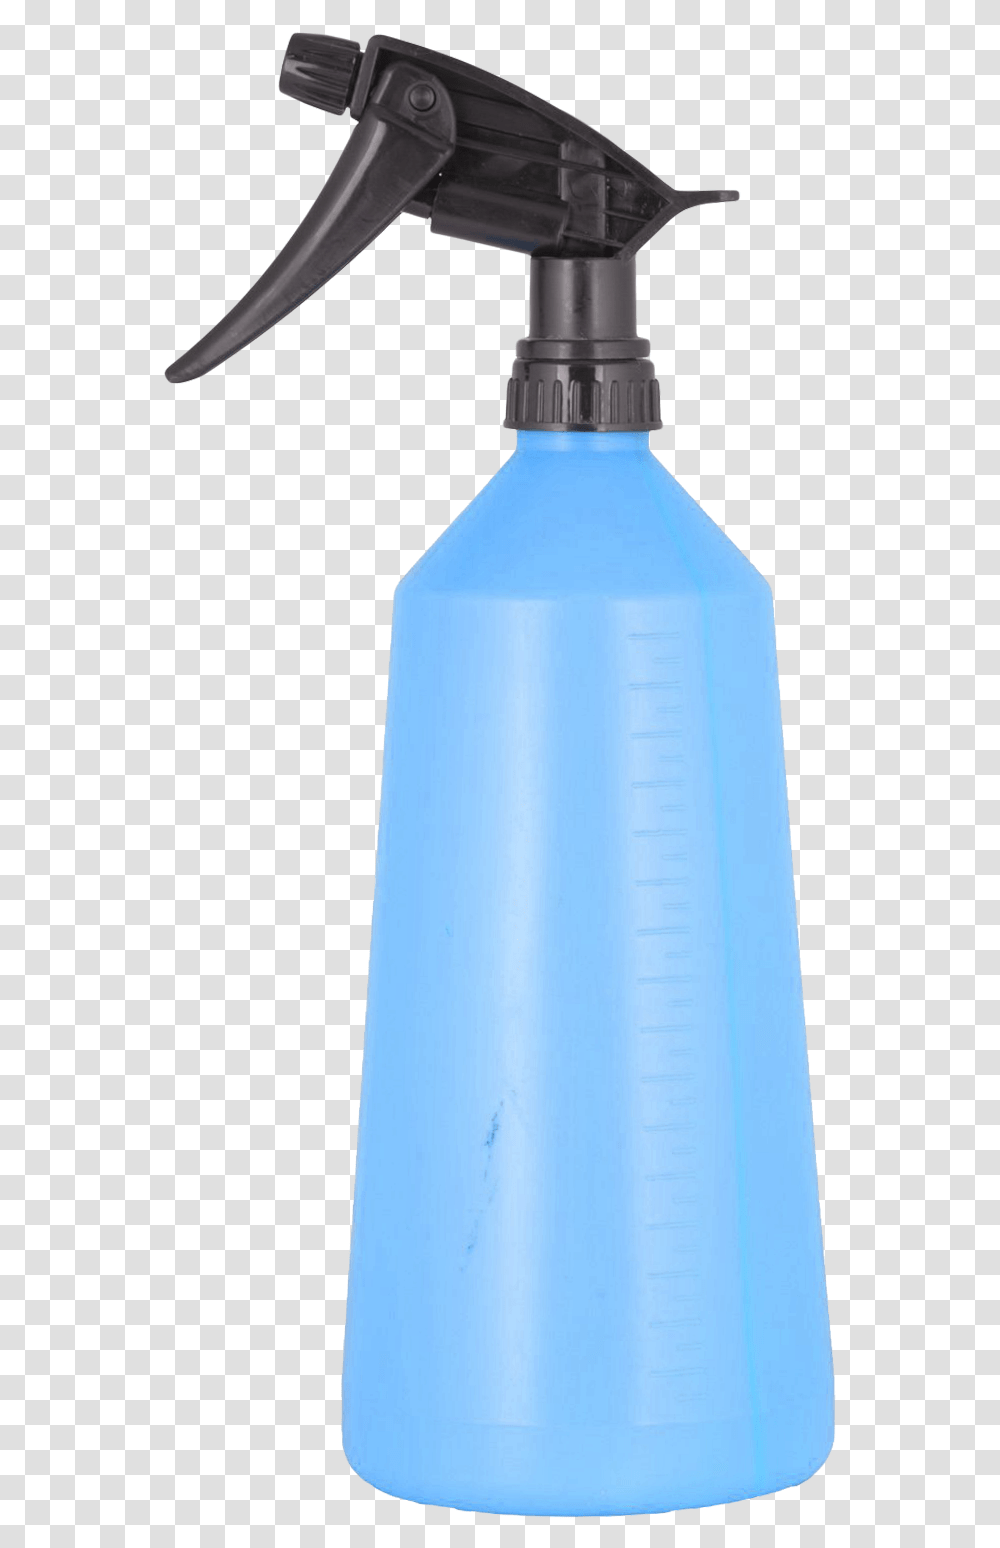 Spray Bottle Image, Cup, Shaker, Beverage, Drink Transparent Png